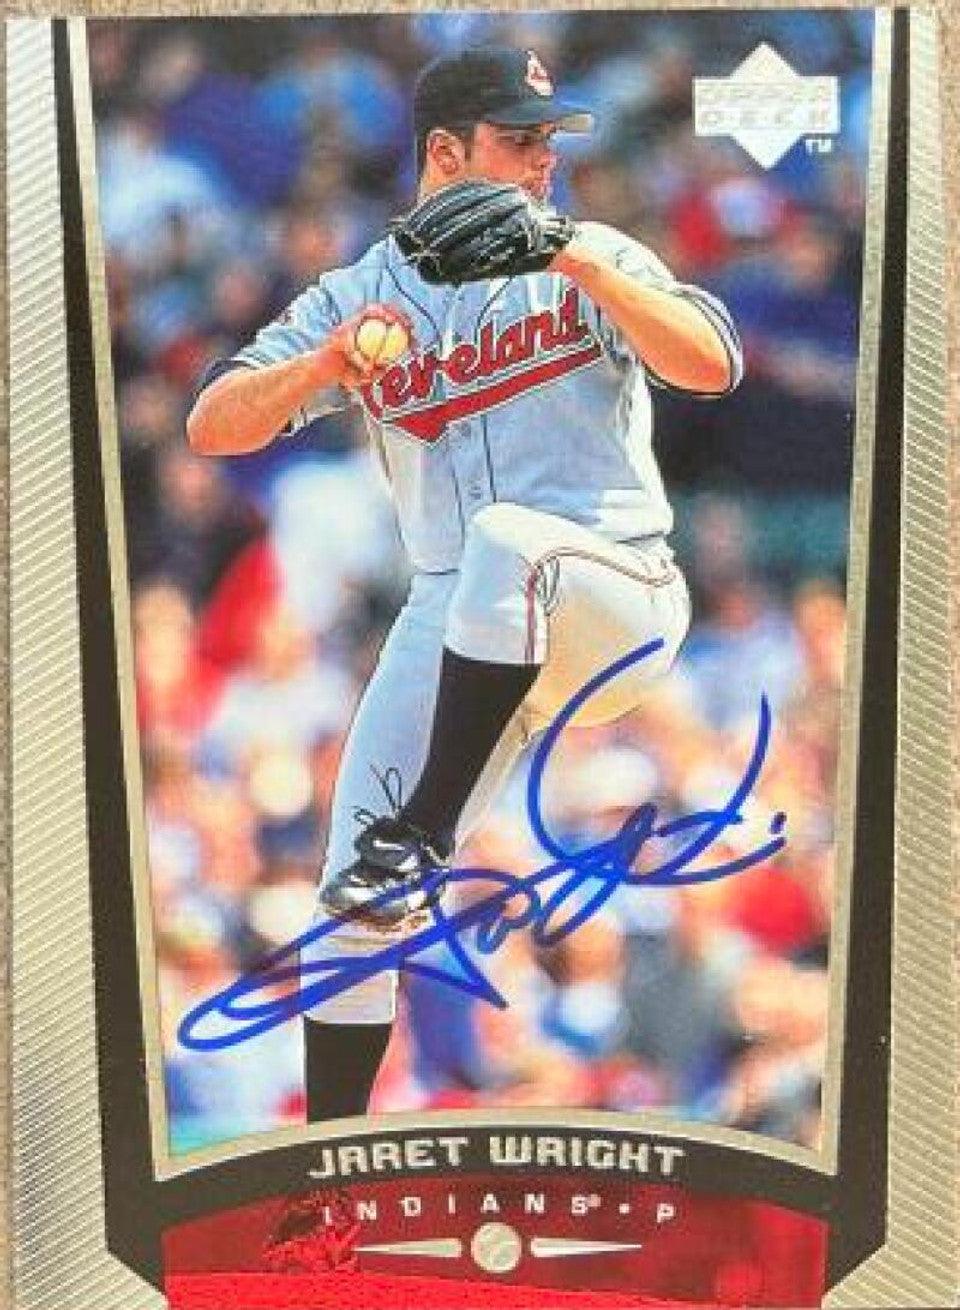 Jaret Wright Signed 1999 Upper Deck Baseball Card - Cleveland Indians - PastPros